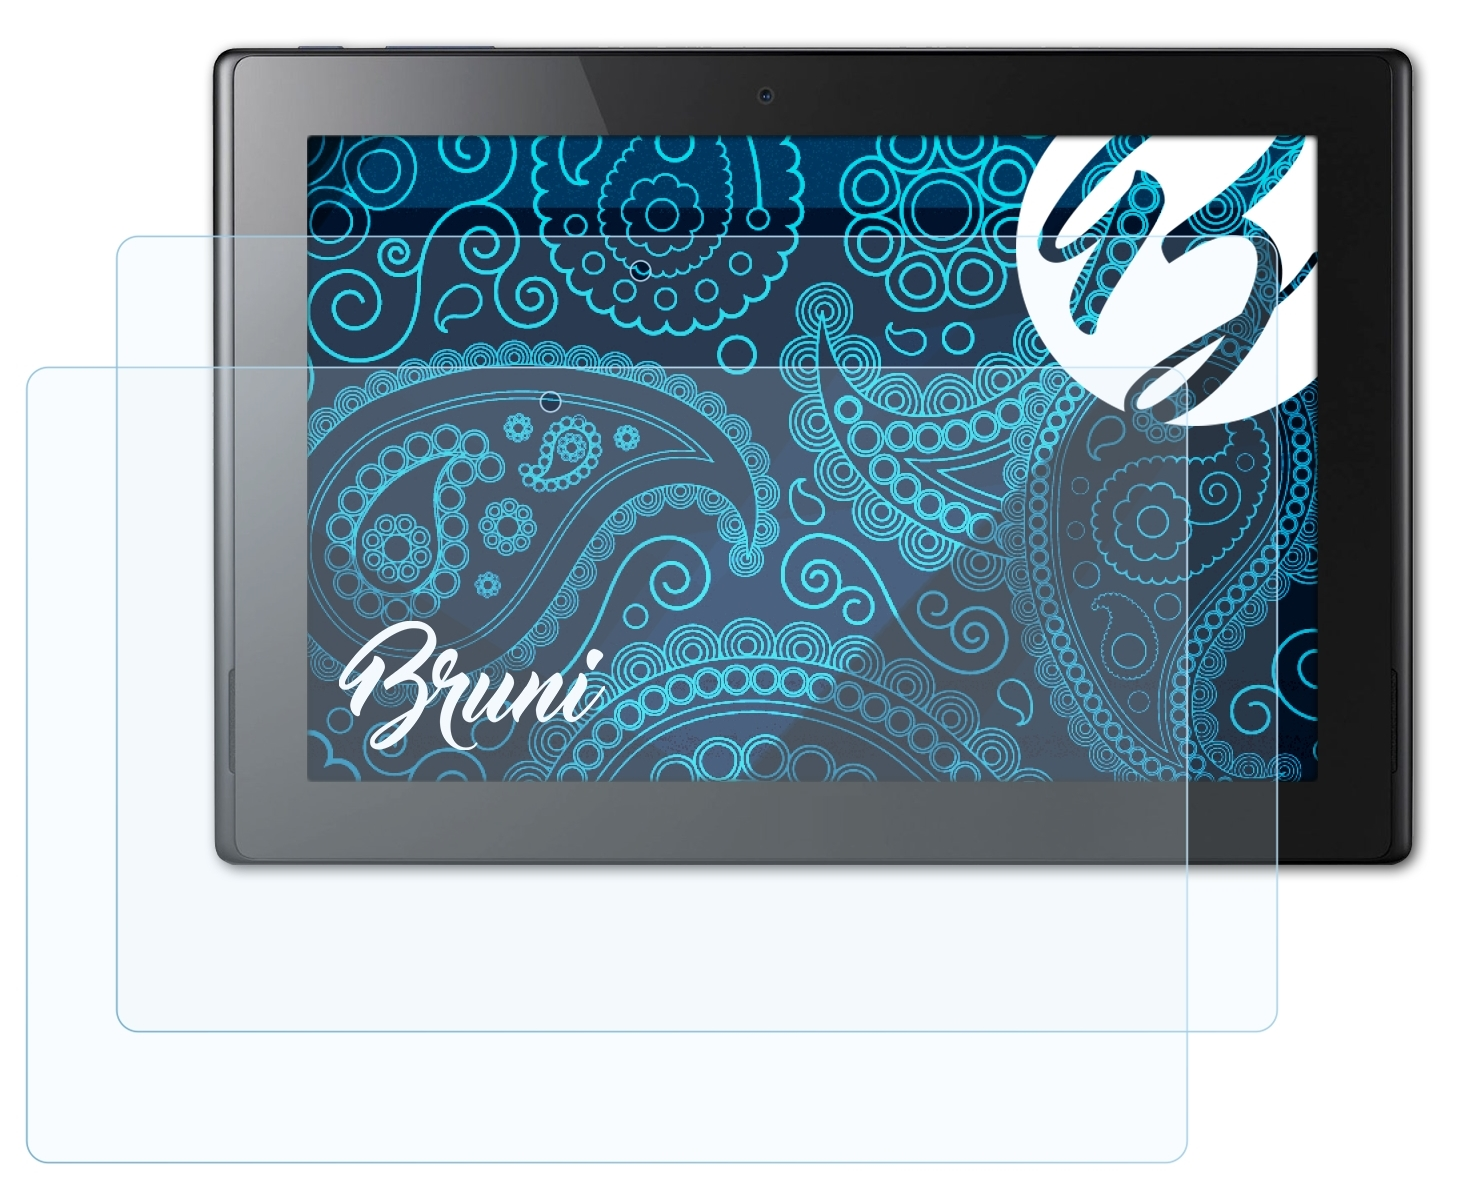 Schutzfolie(für (A3-A30)) Acer 10 Basics-Clear Iconia BRUNI Tab 2x